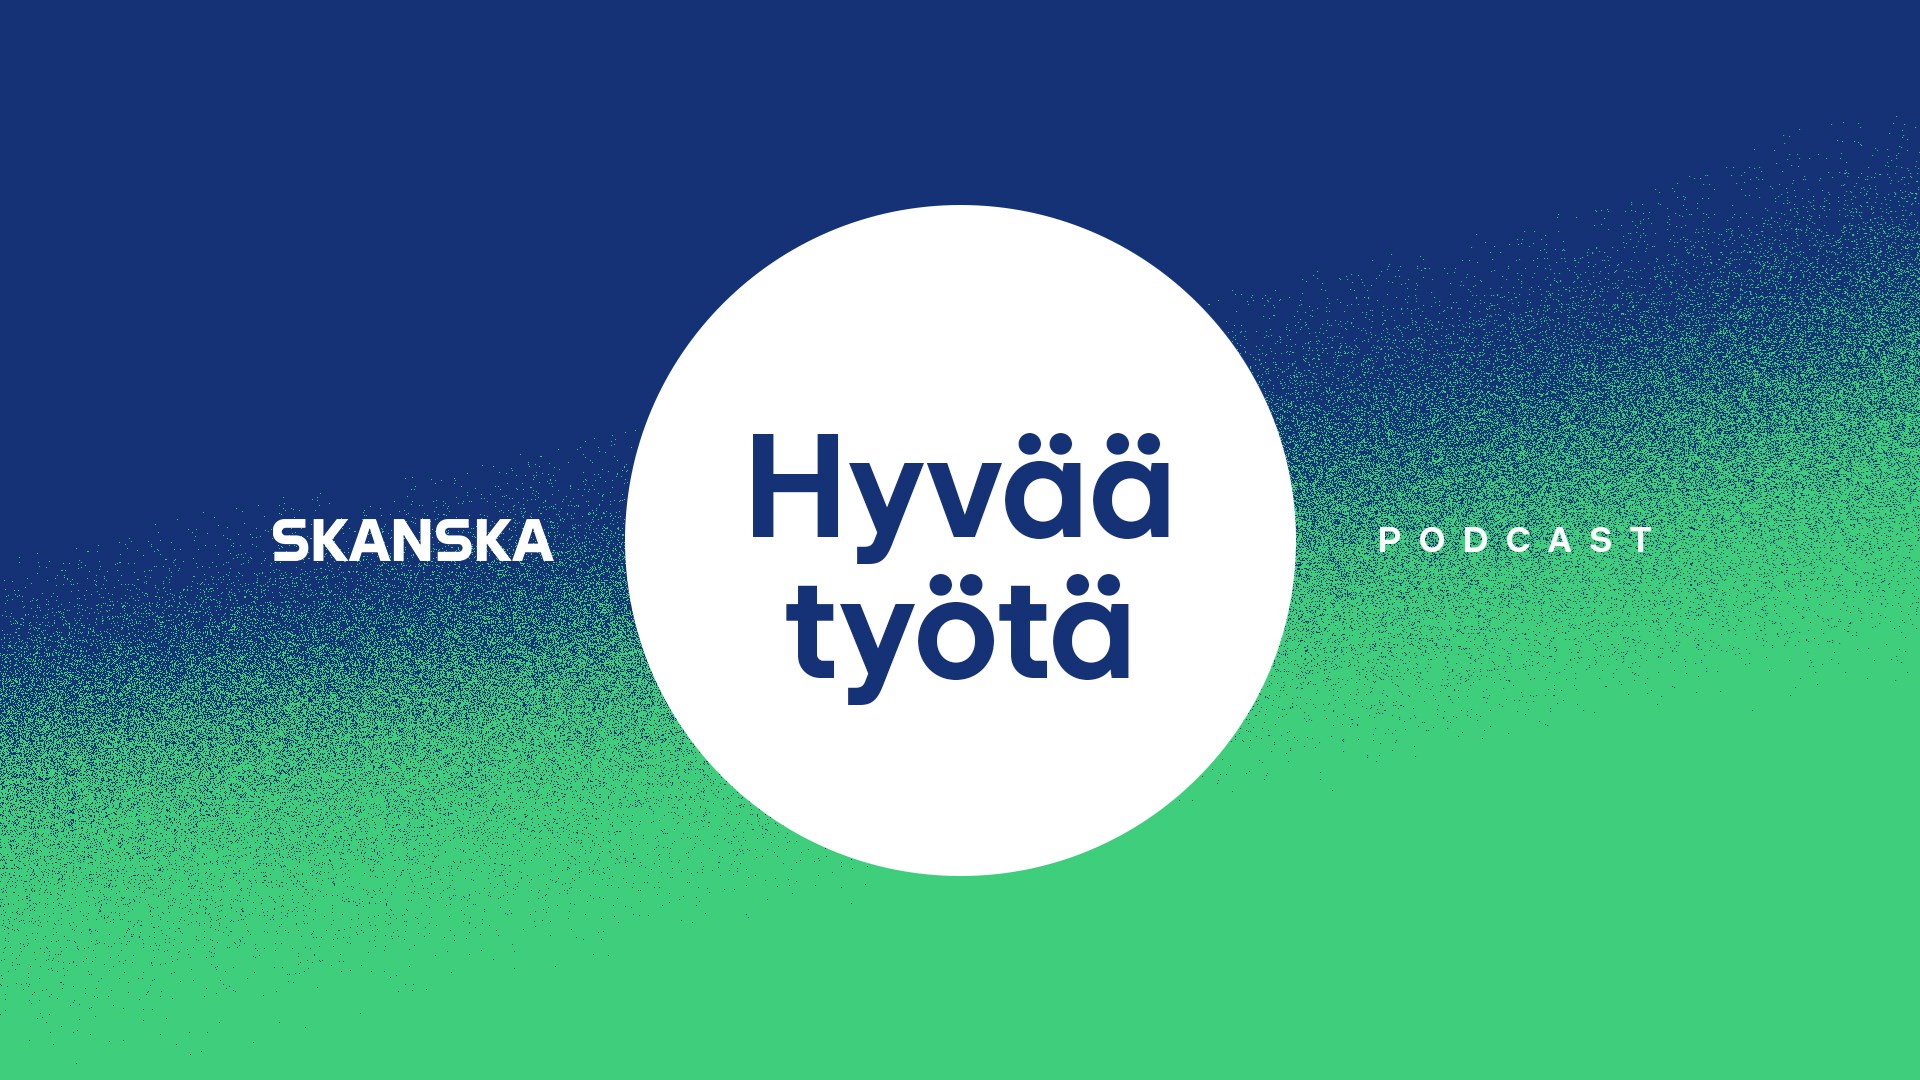 SKANSKA_Hyvaa_tyota_nettisivut_cover_9x16_5